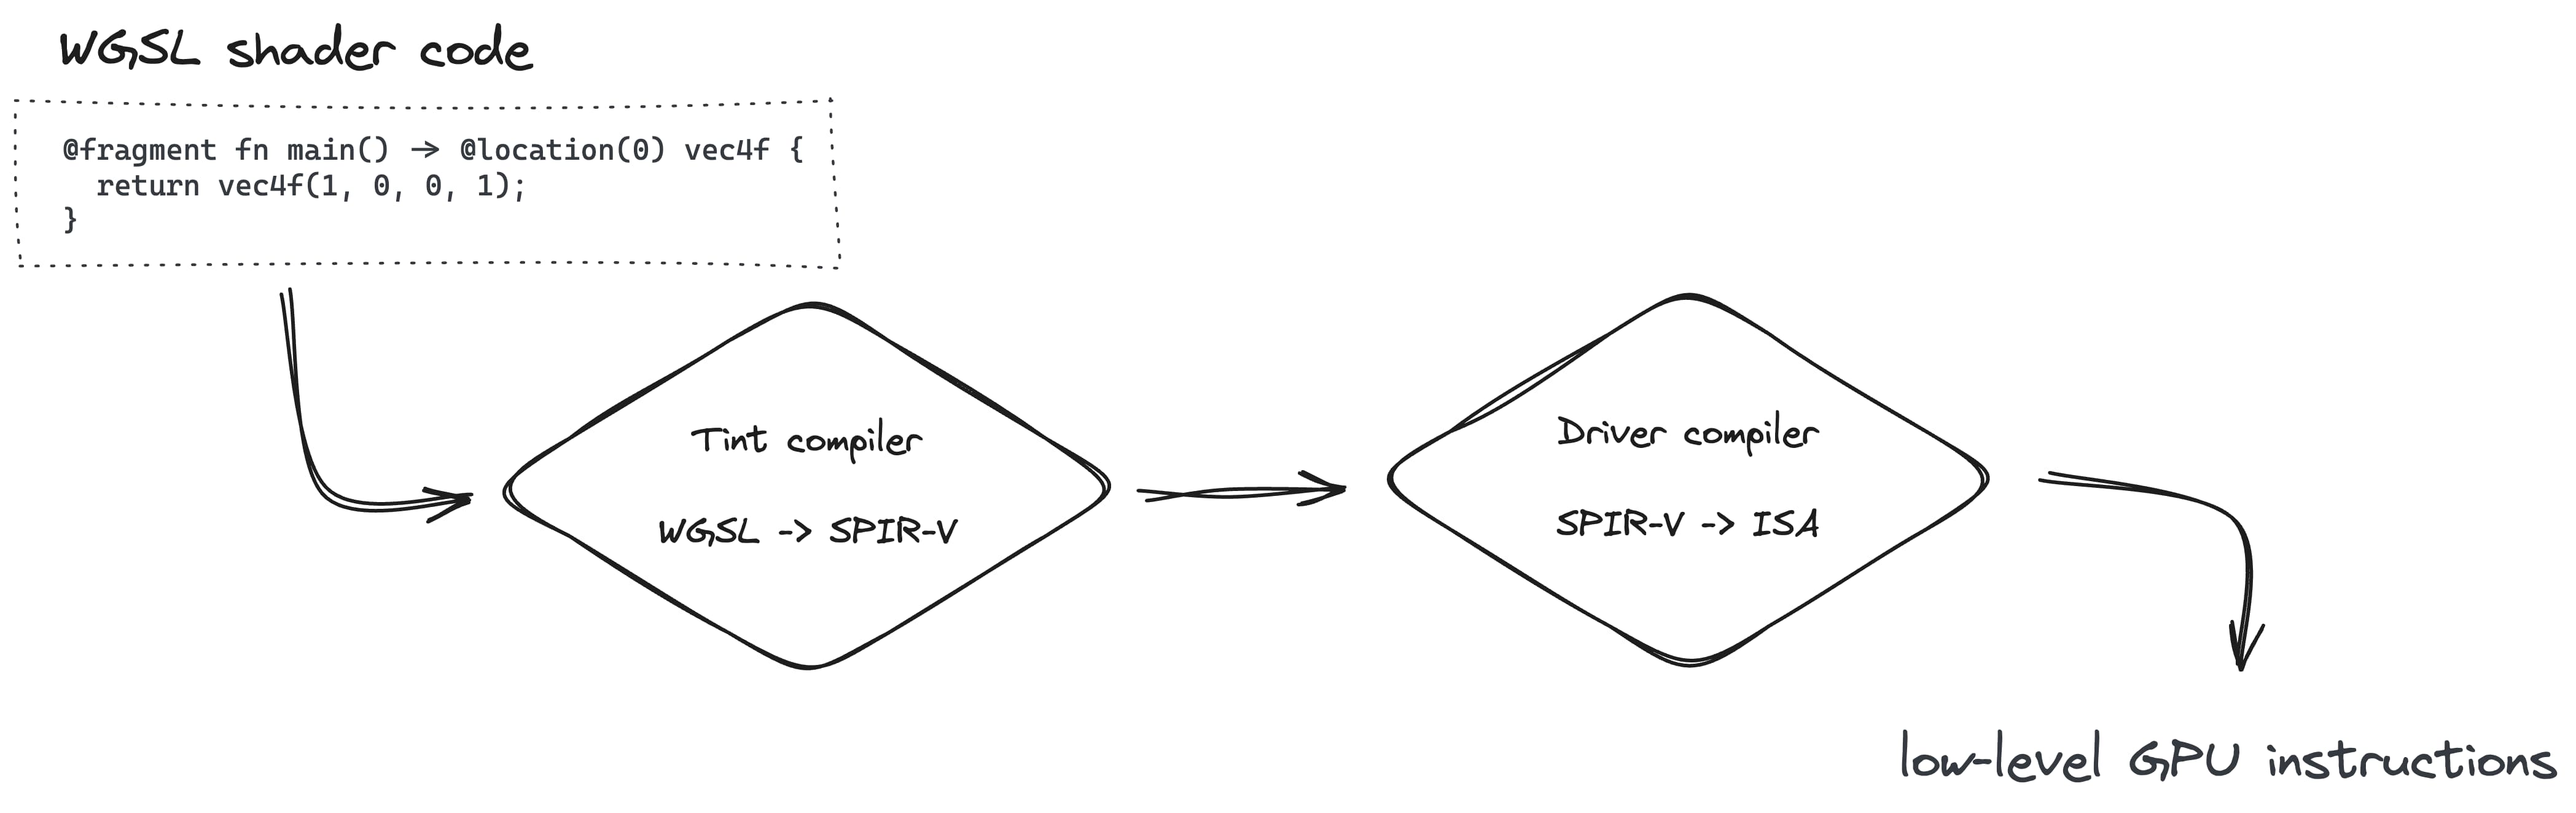 Pembuatan pipeline render melibatkan konversi WGSL ke SPIR-V dengan compiler Tint, lalu ke ISA dengan compiler Driver.